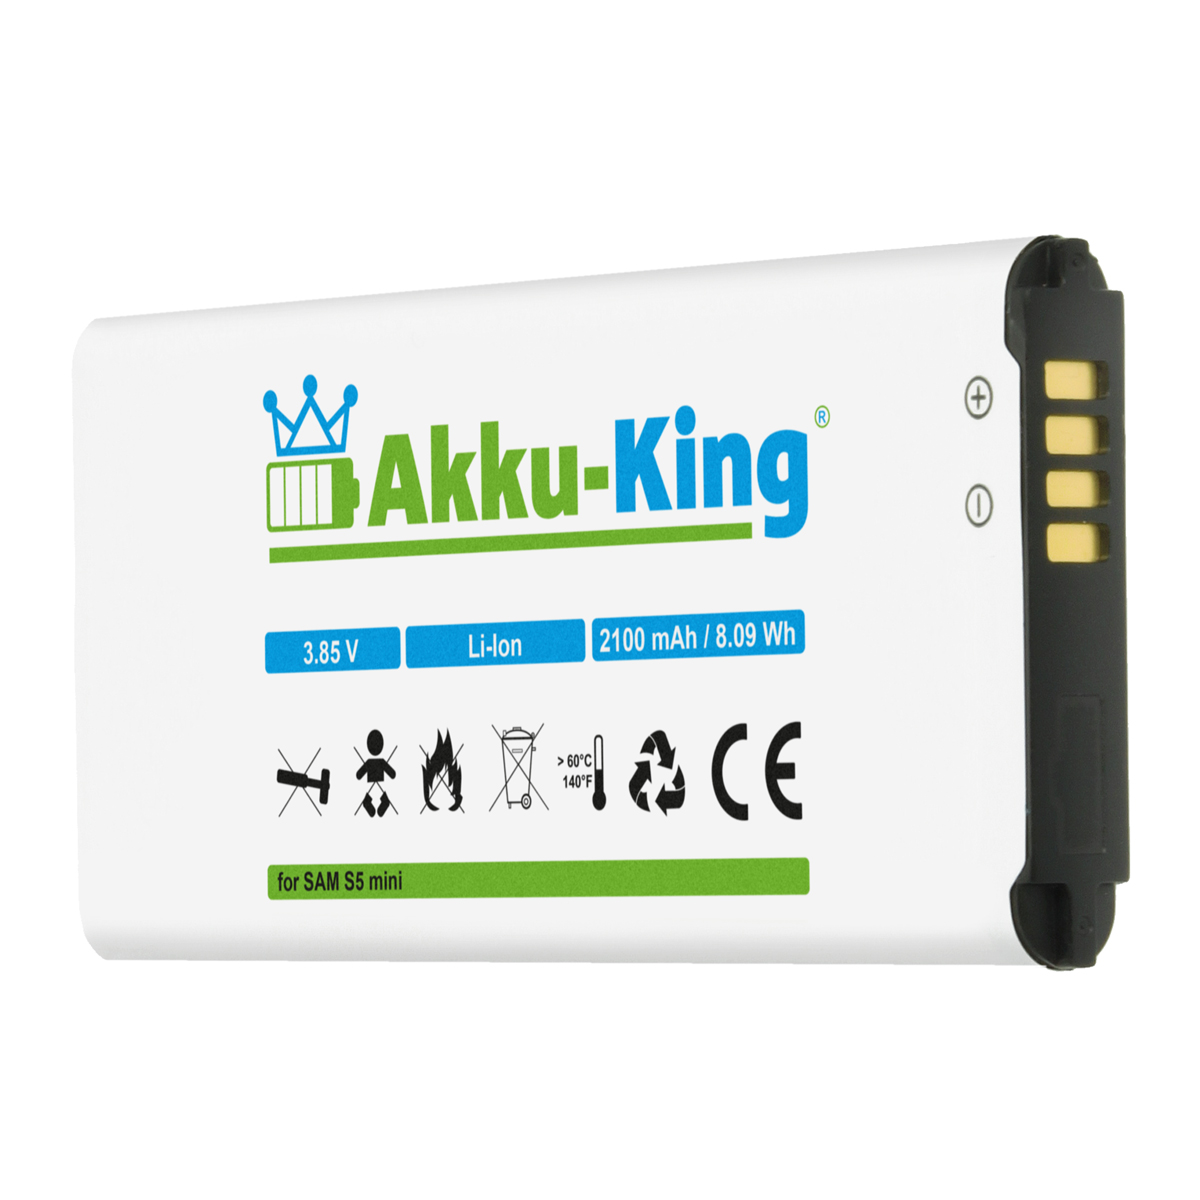 EG-BG800BBE 2100mAh Volt, Li-Ion mit Akku Samsung Handy-Akku, AKKU-KING kompatibel 3.85